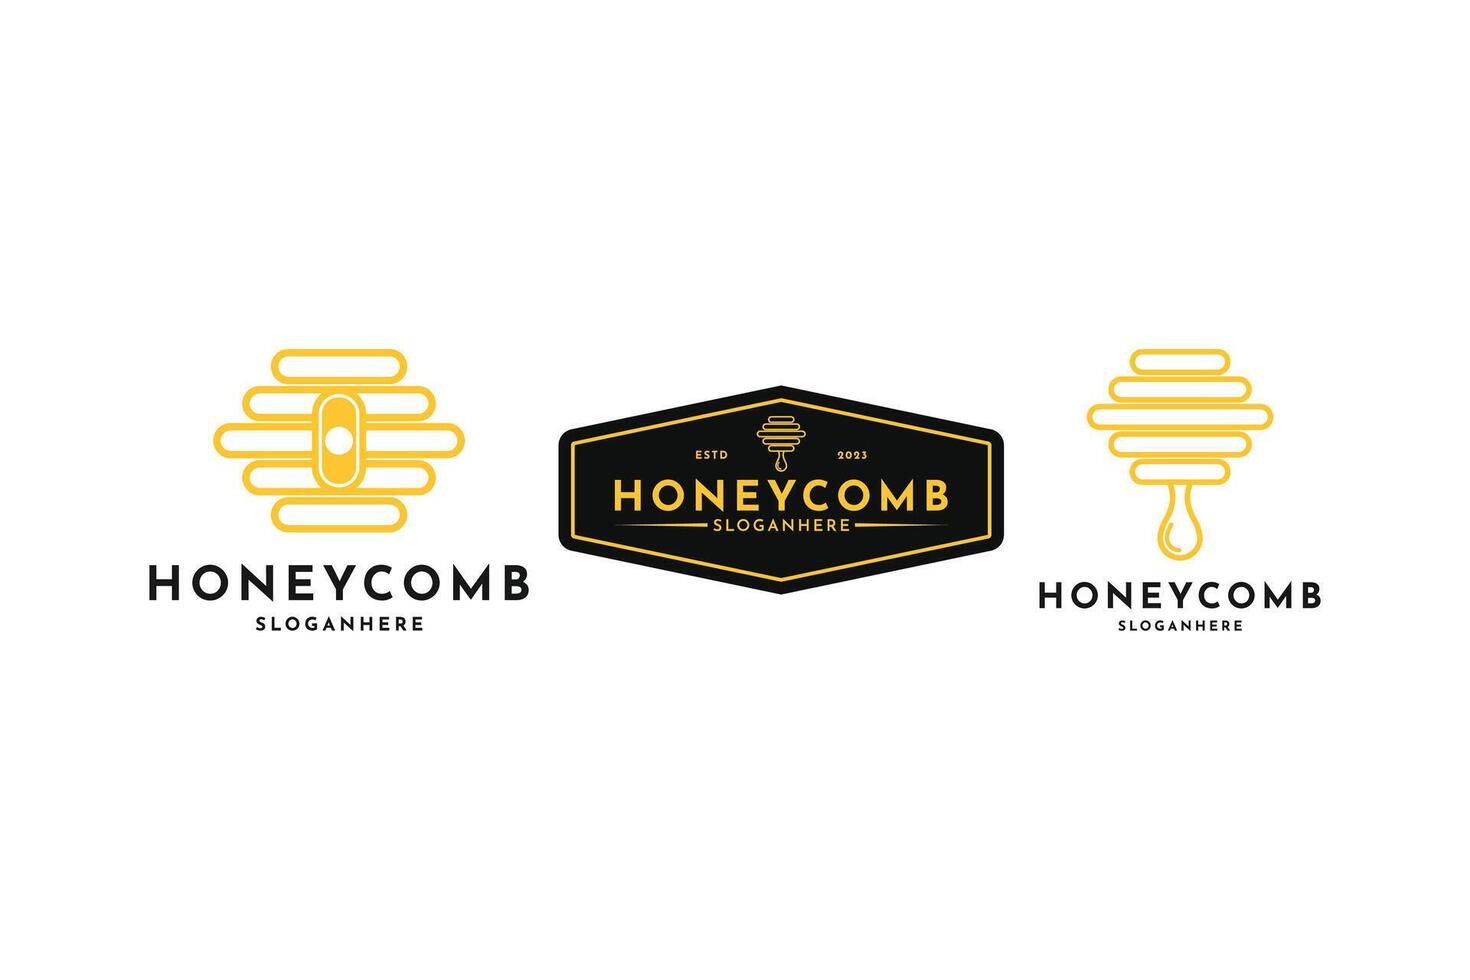 honeycomb logo design vector idea, honey logo design set collection